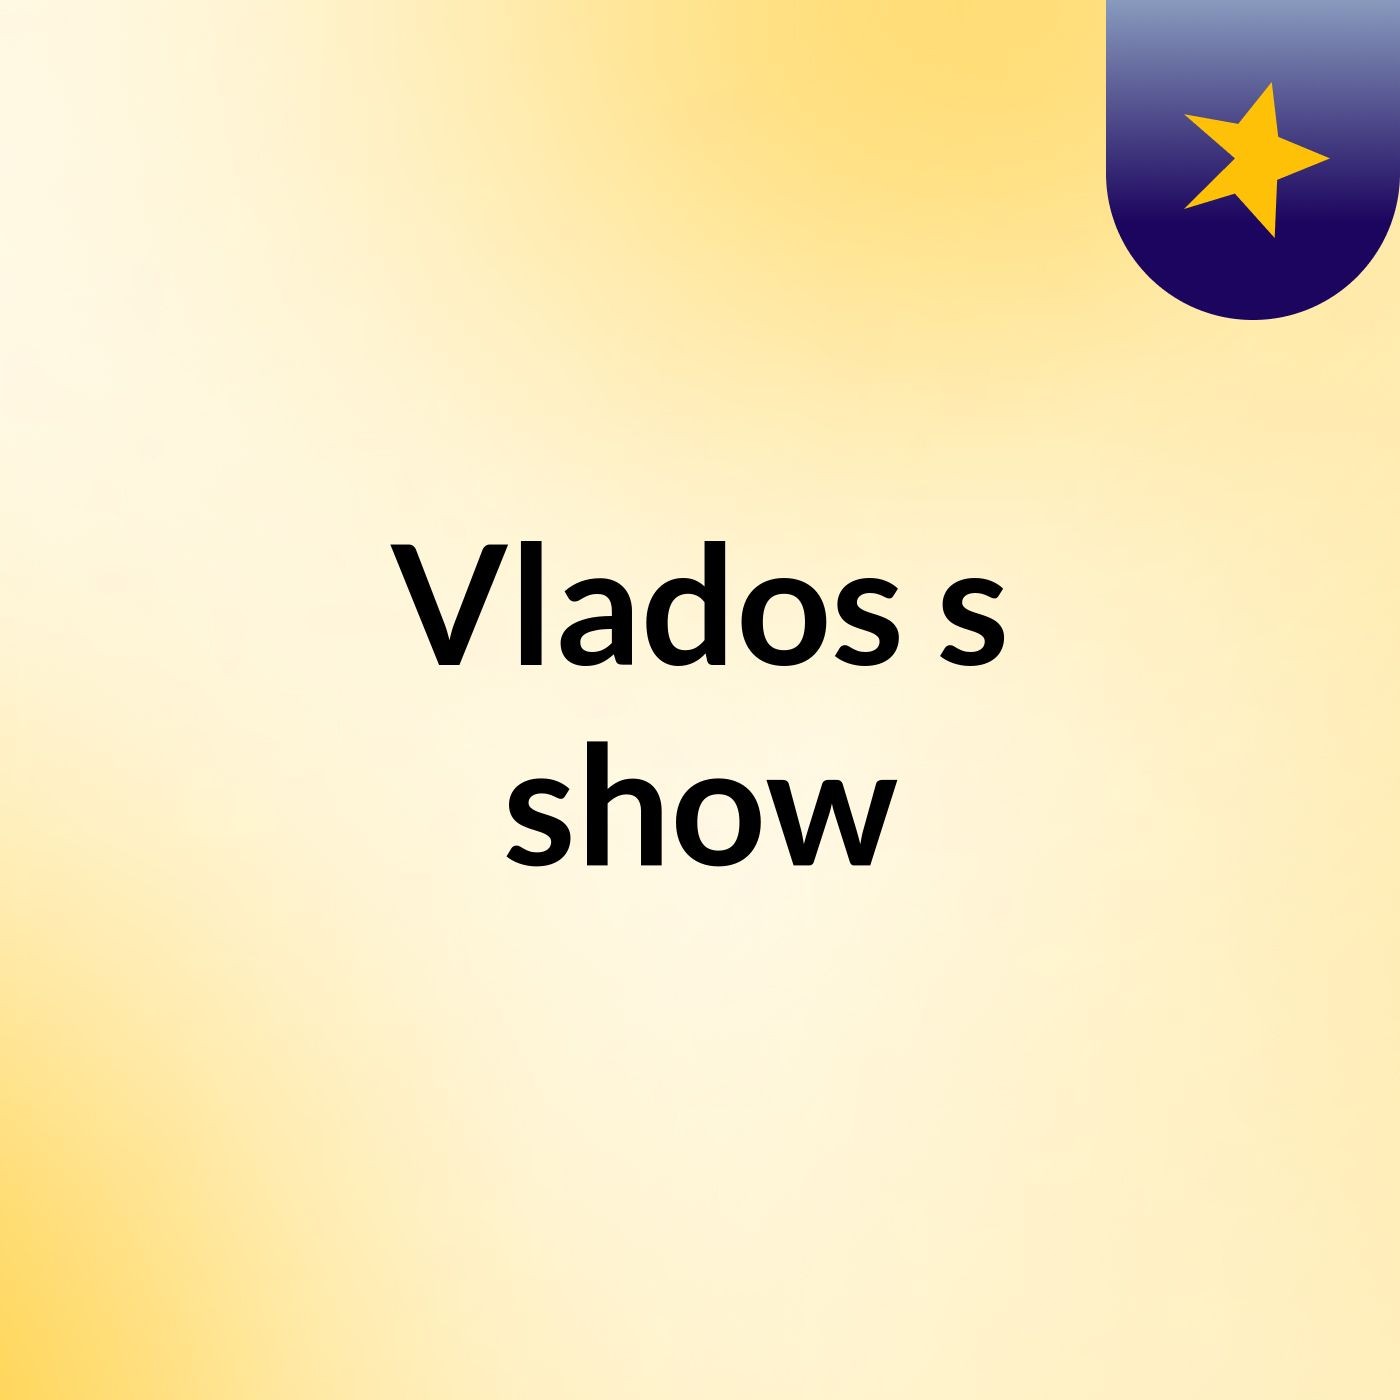 Vlados's show